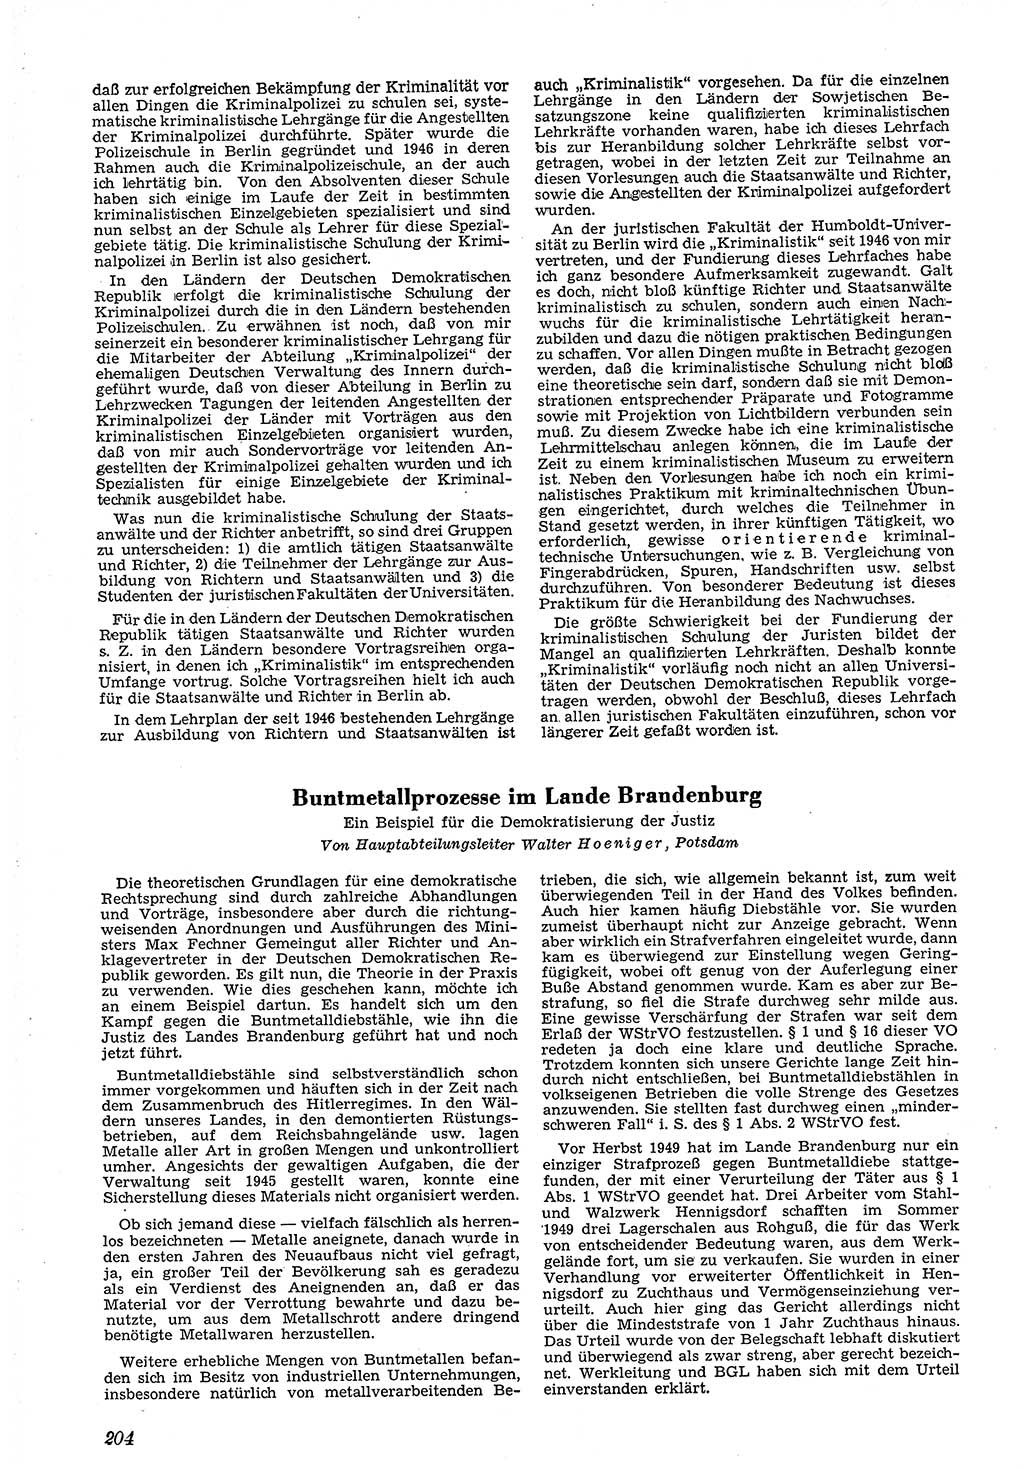 Neue Justiz (NJ), Zeitschrift für Recht und Rechtswissenschaft [Deutsche Demokratische Republik (DDR)], 4. Jahrgang 1950, Seite 204 (NJ DDR 1950, S. 204)